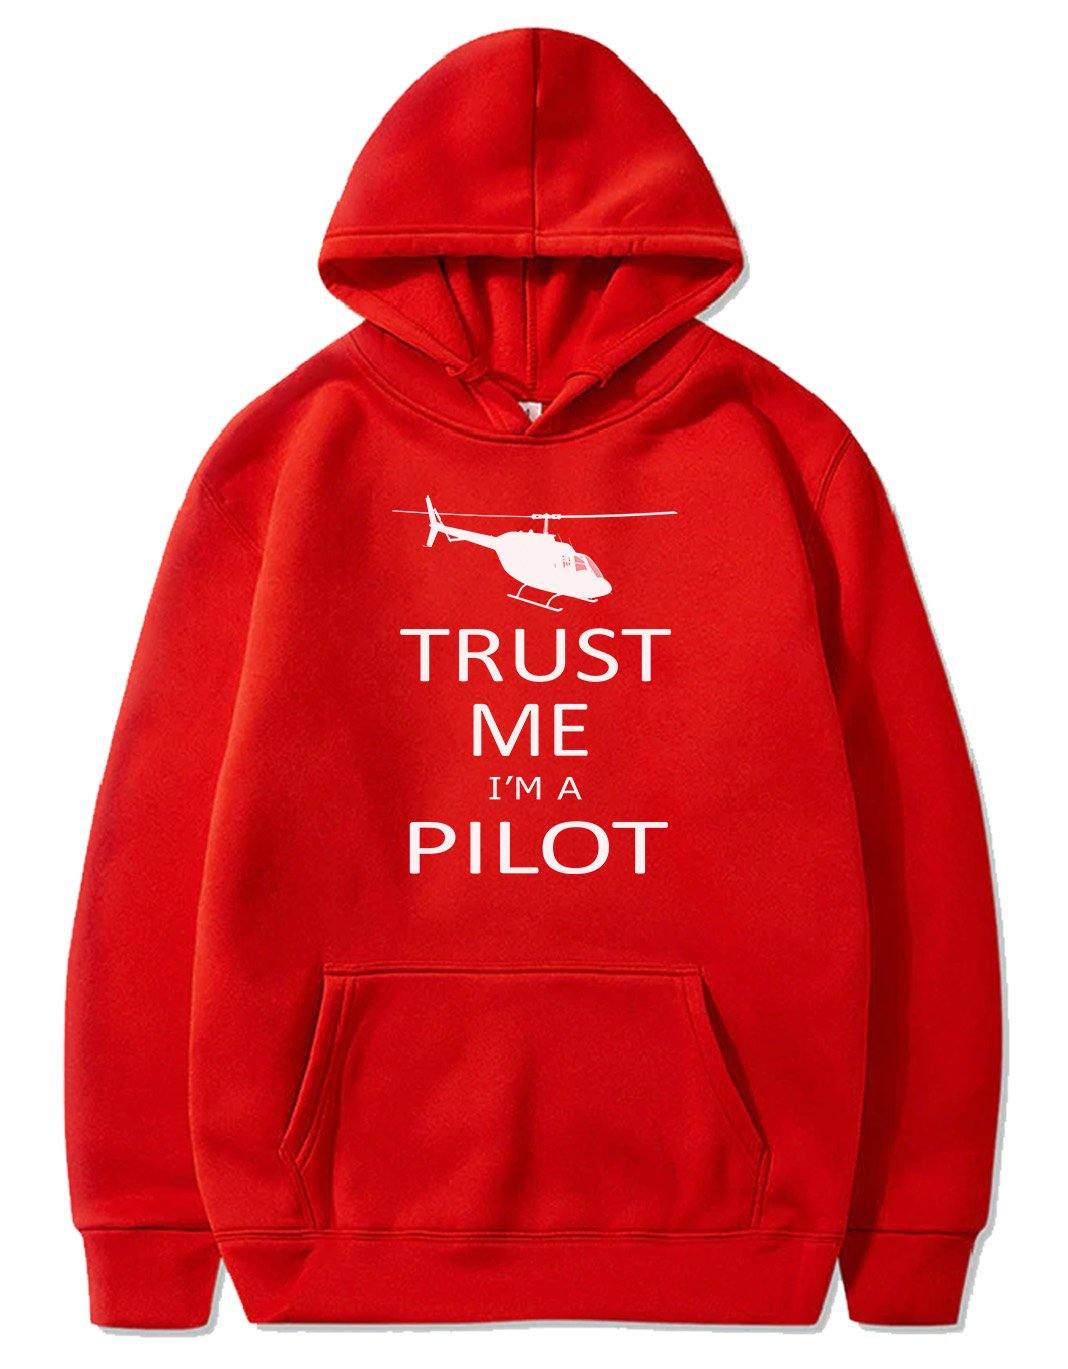 TRUST ME I'M A PILOT  DESIGNED PULLOVER THE AV8R